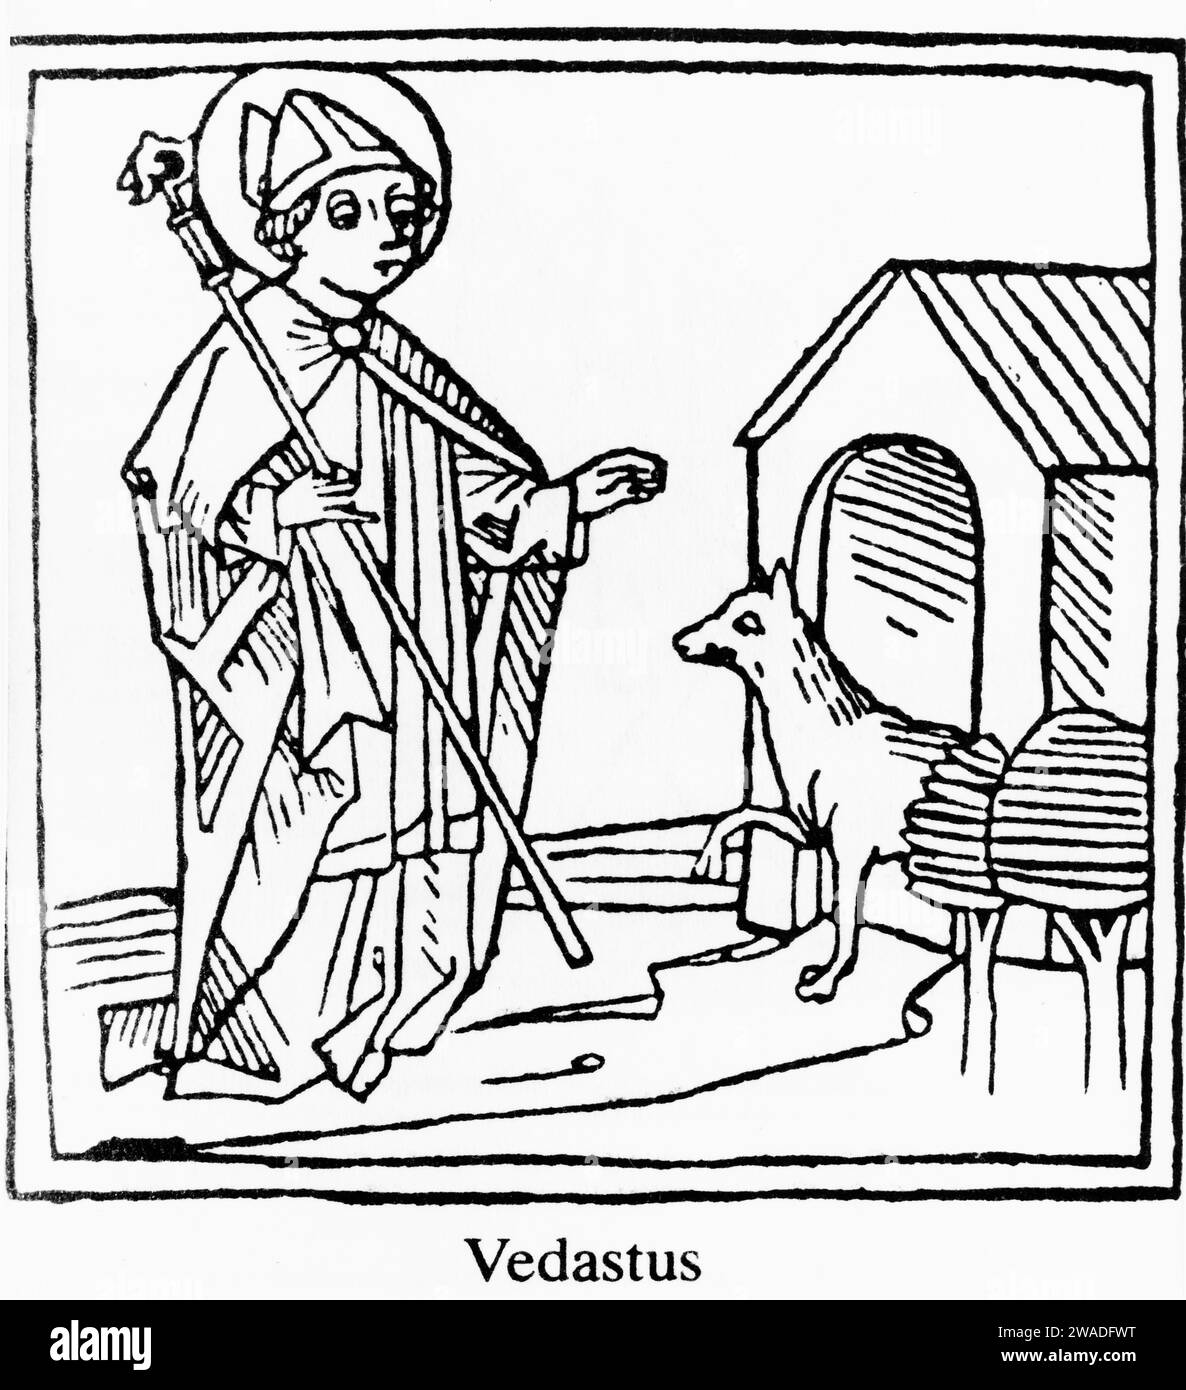 Vedastus (Vaast. Gaston), erster Bischof von Arras, mittelalterlicher Holzschnitt Stockfoto